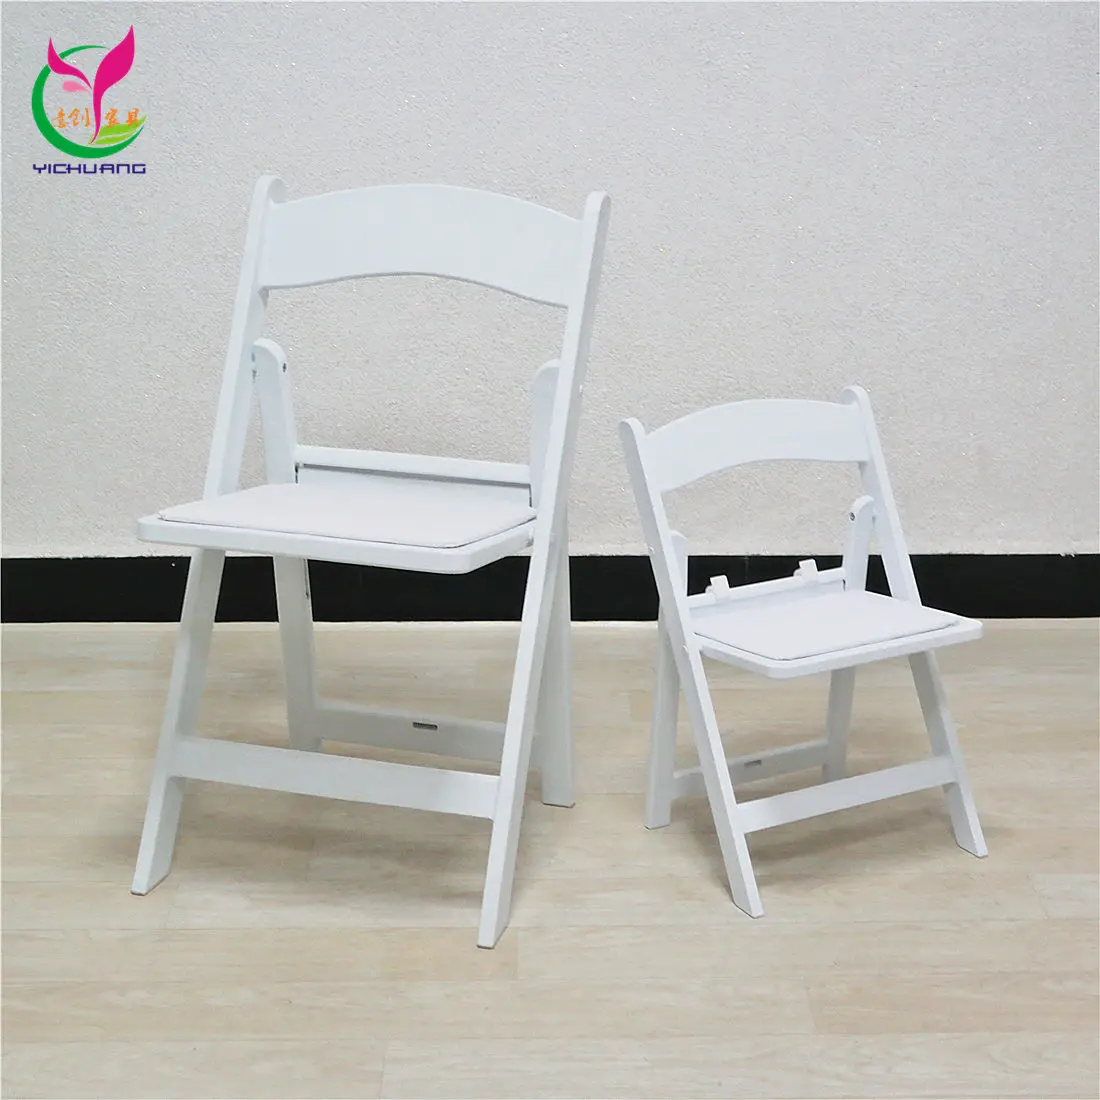 Cadeira dobrável para crianças em resina branca leve e durável para uso ao ar livre